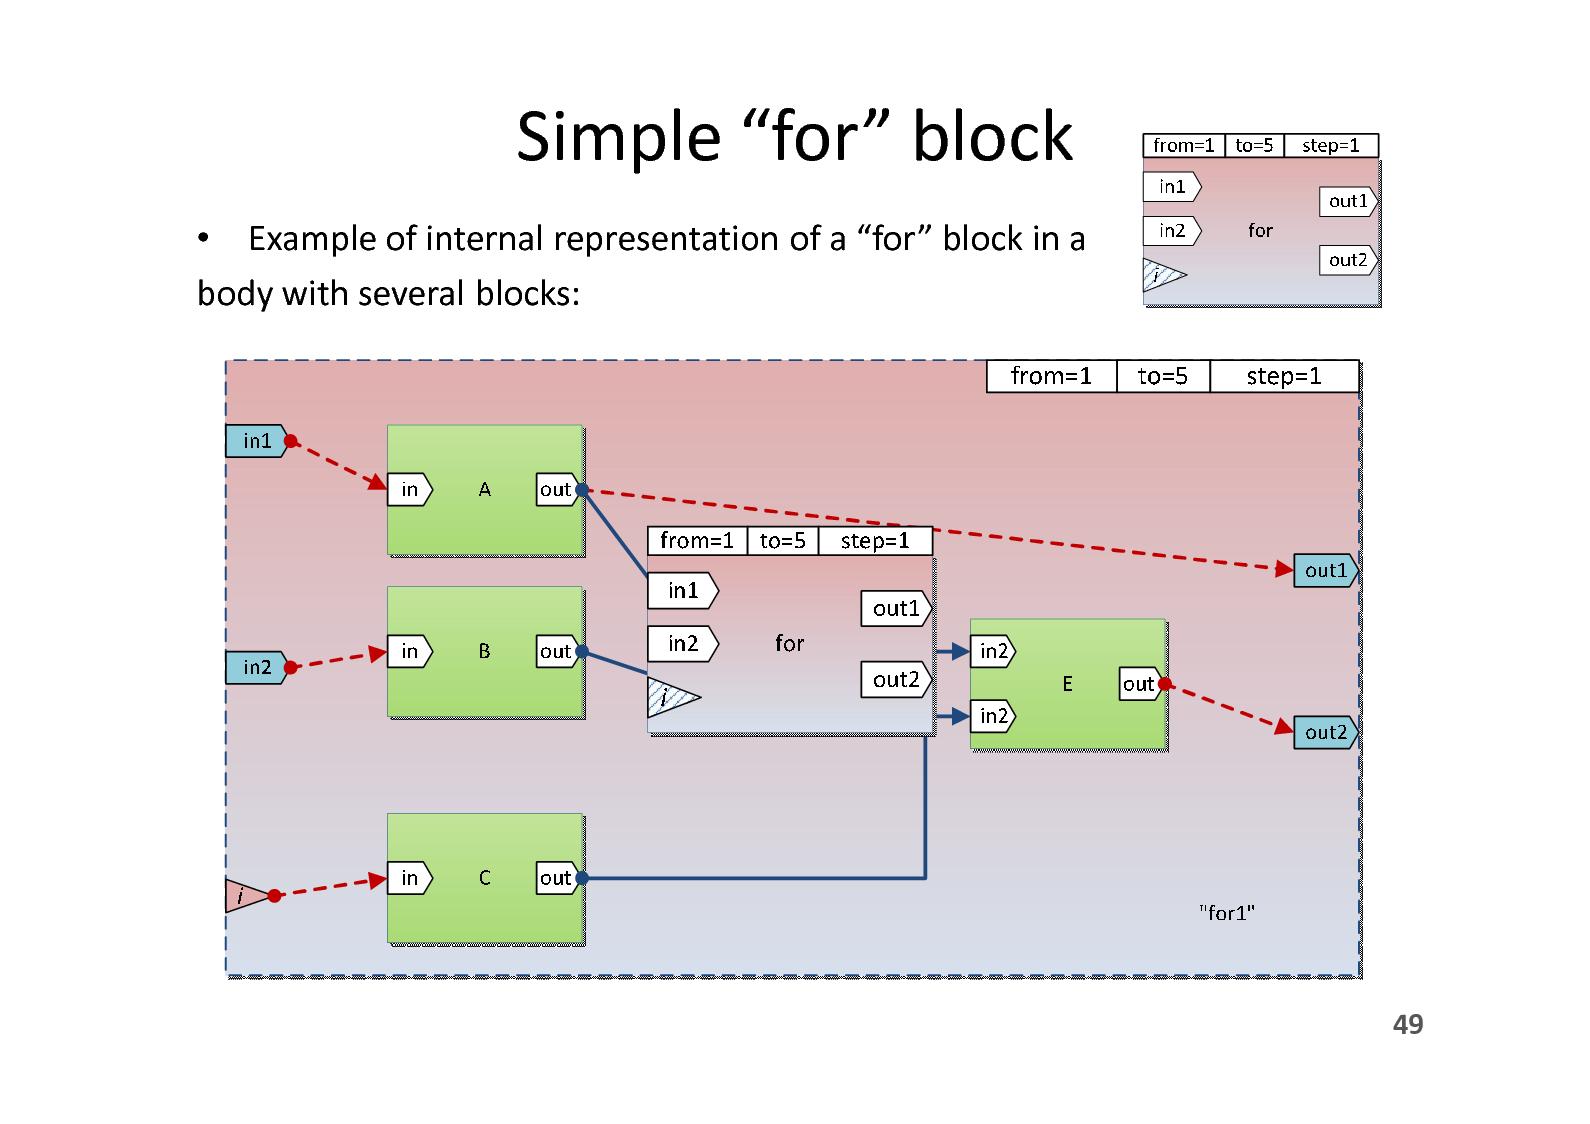 Файл:DPMine@P - язык построения моделей извлечения и анализа процессов и плагин для ProM (Сергей Шершаков, SECR-2013).pdf